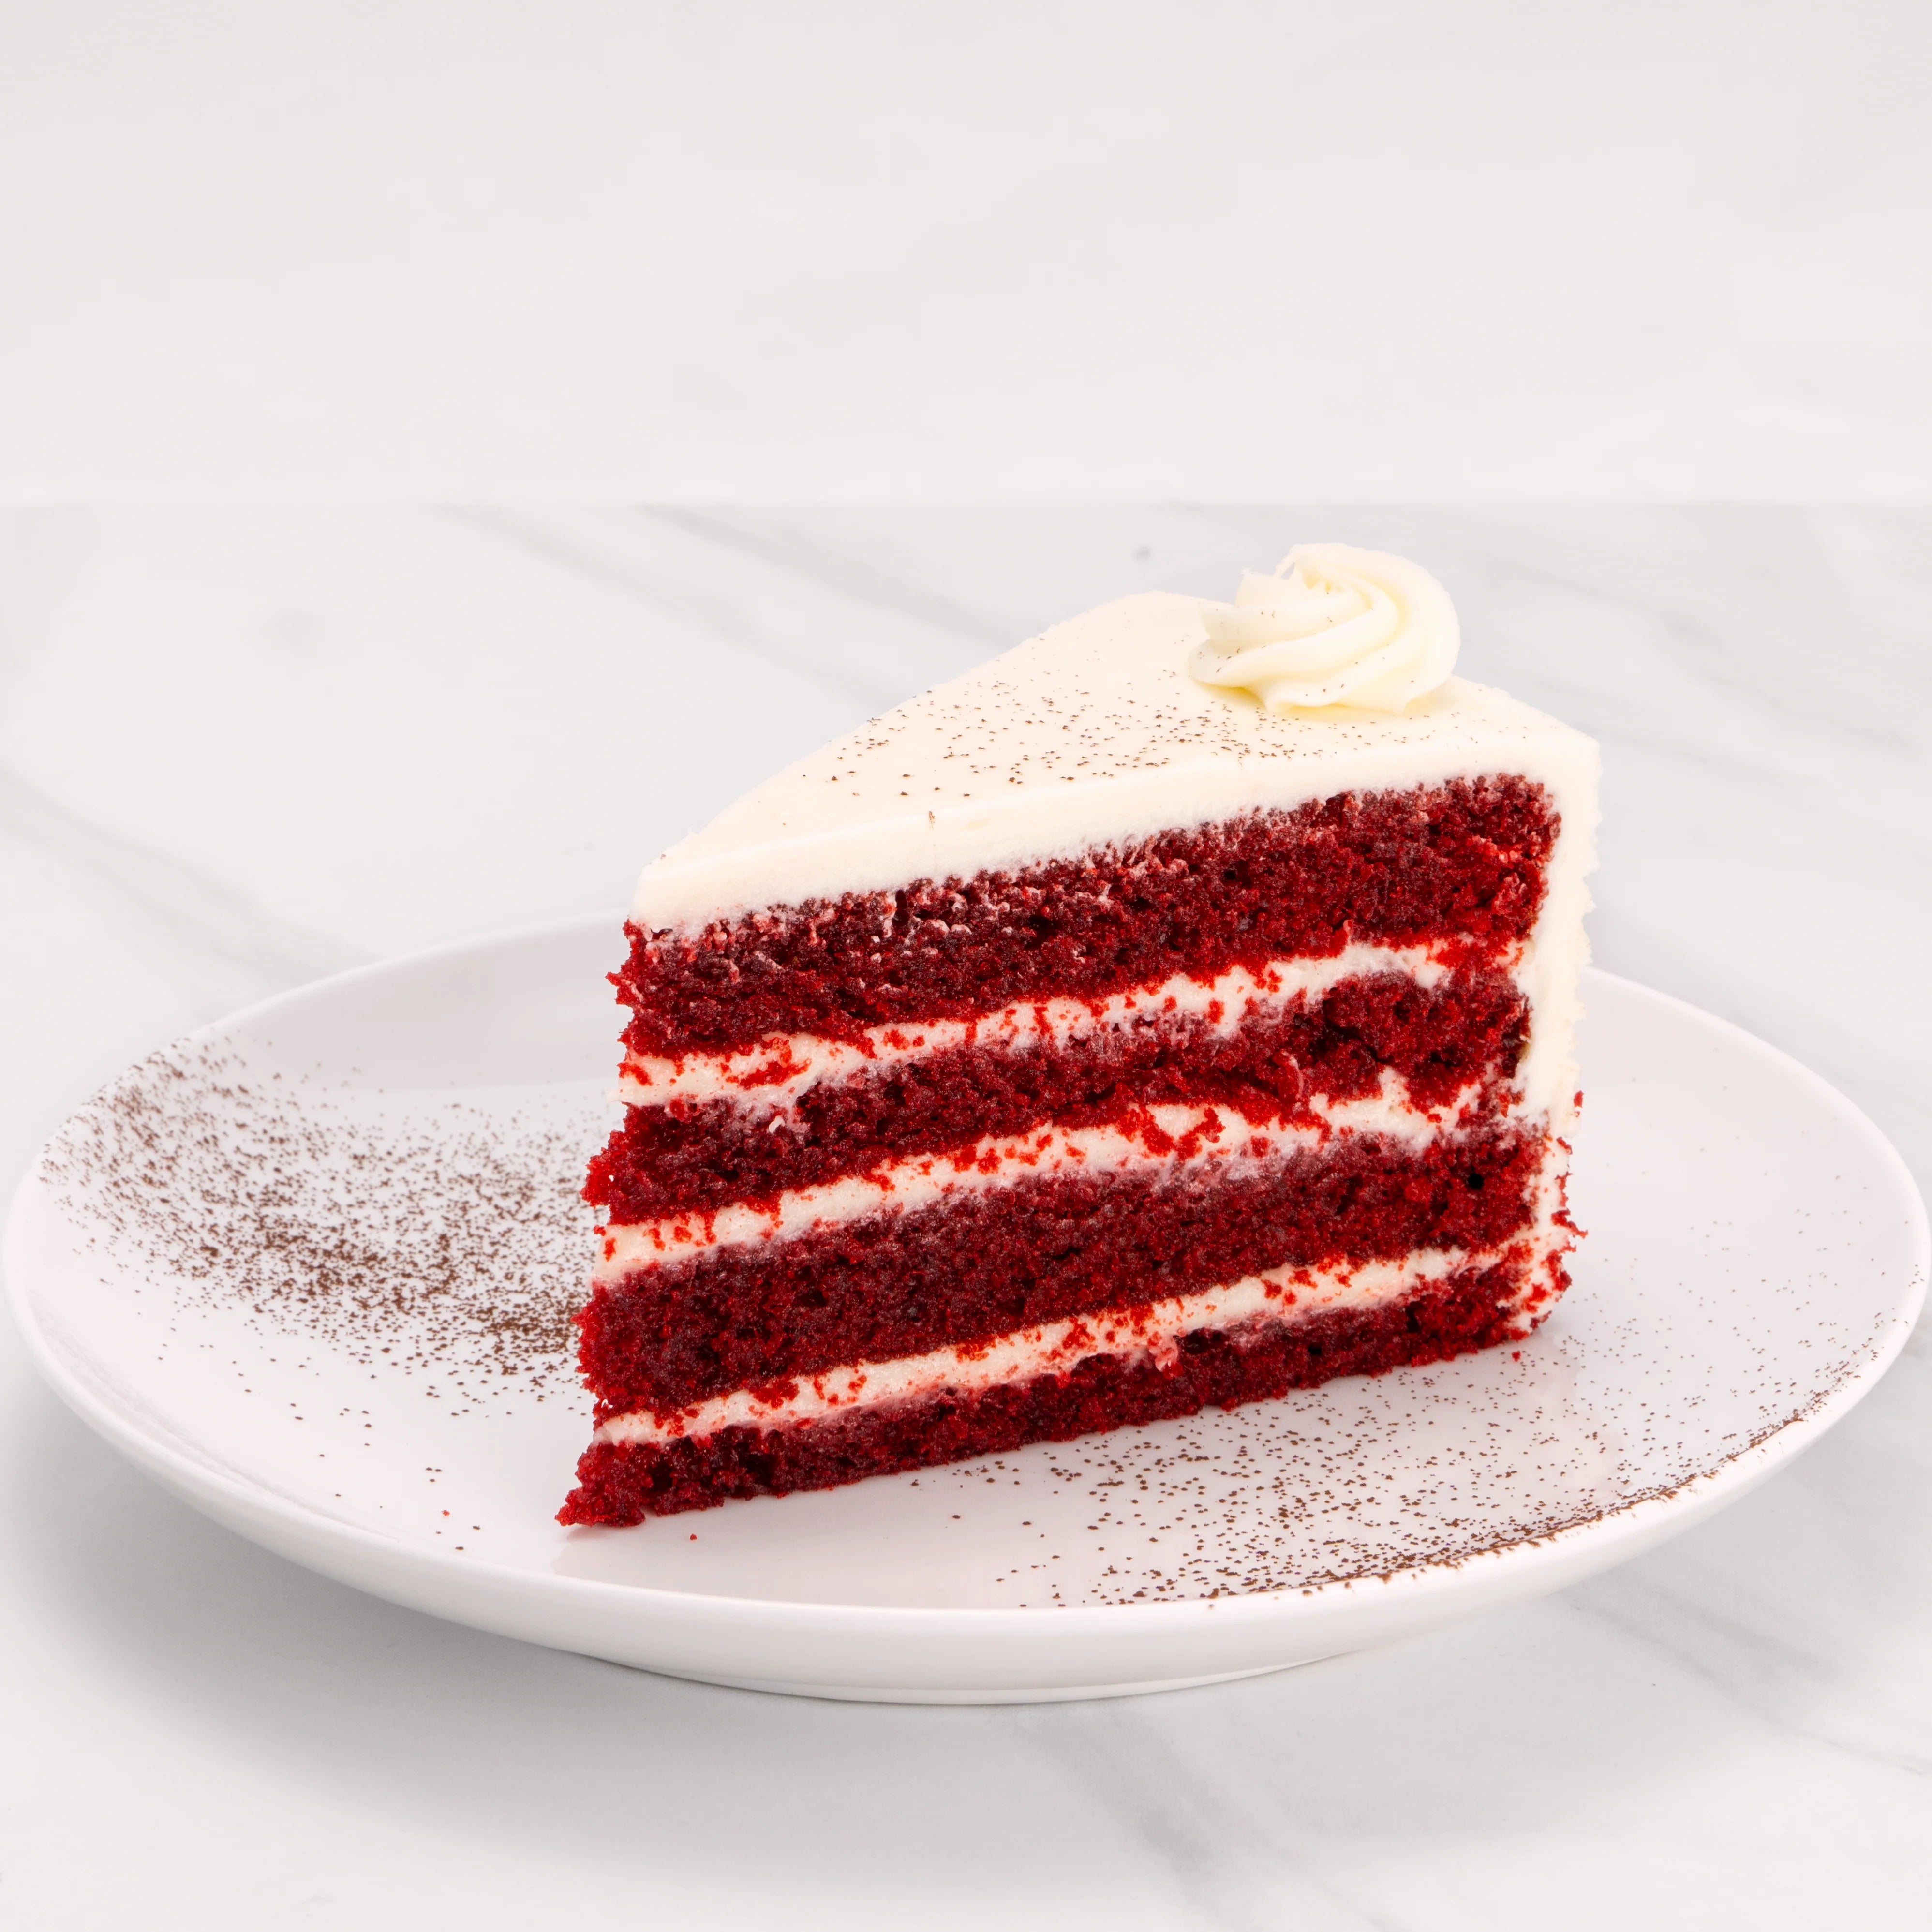 Slice of Red Velvet Cake.